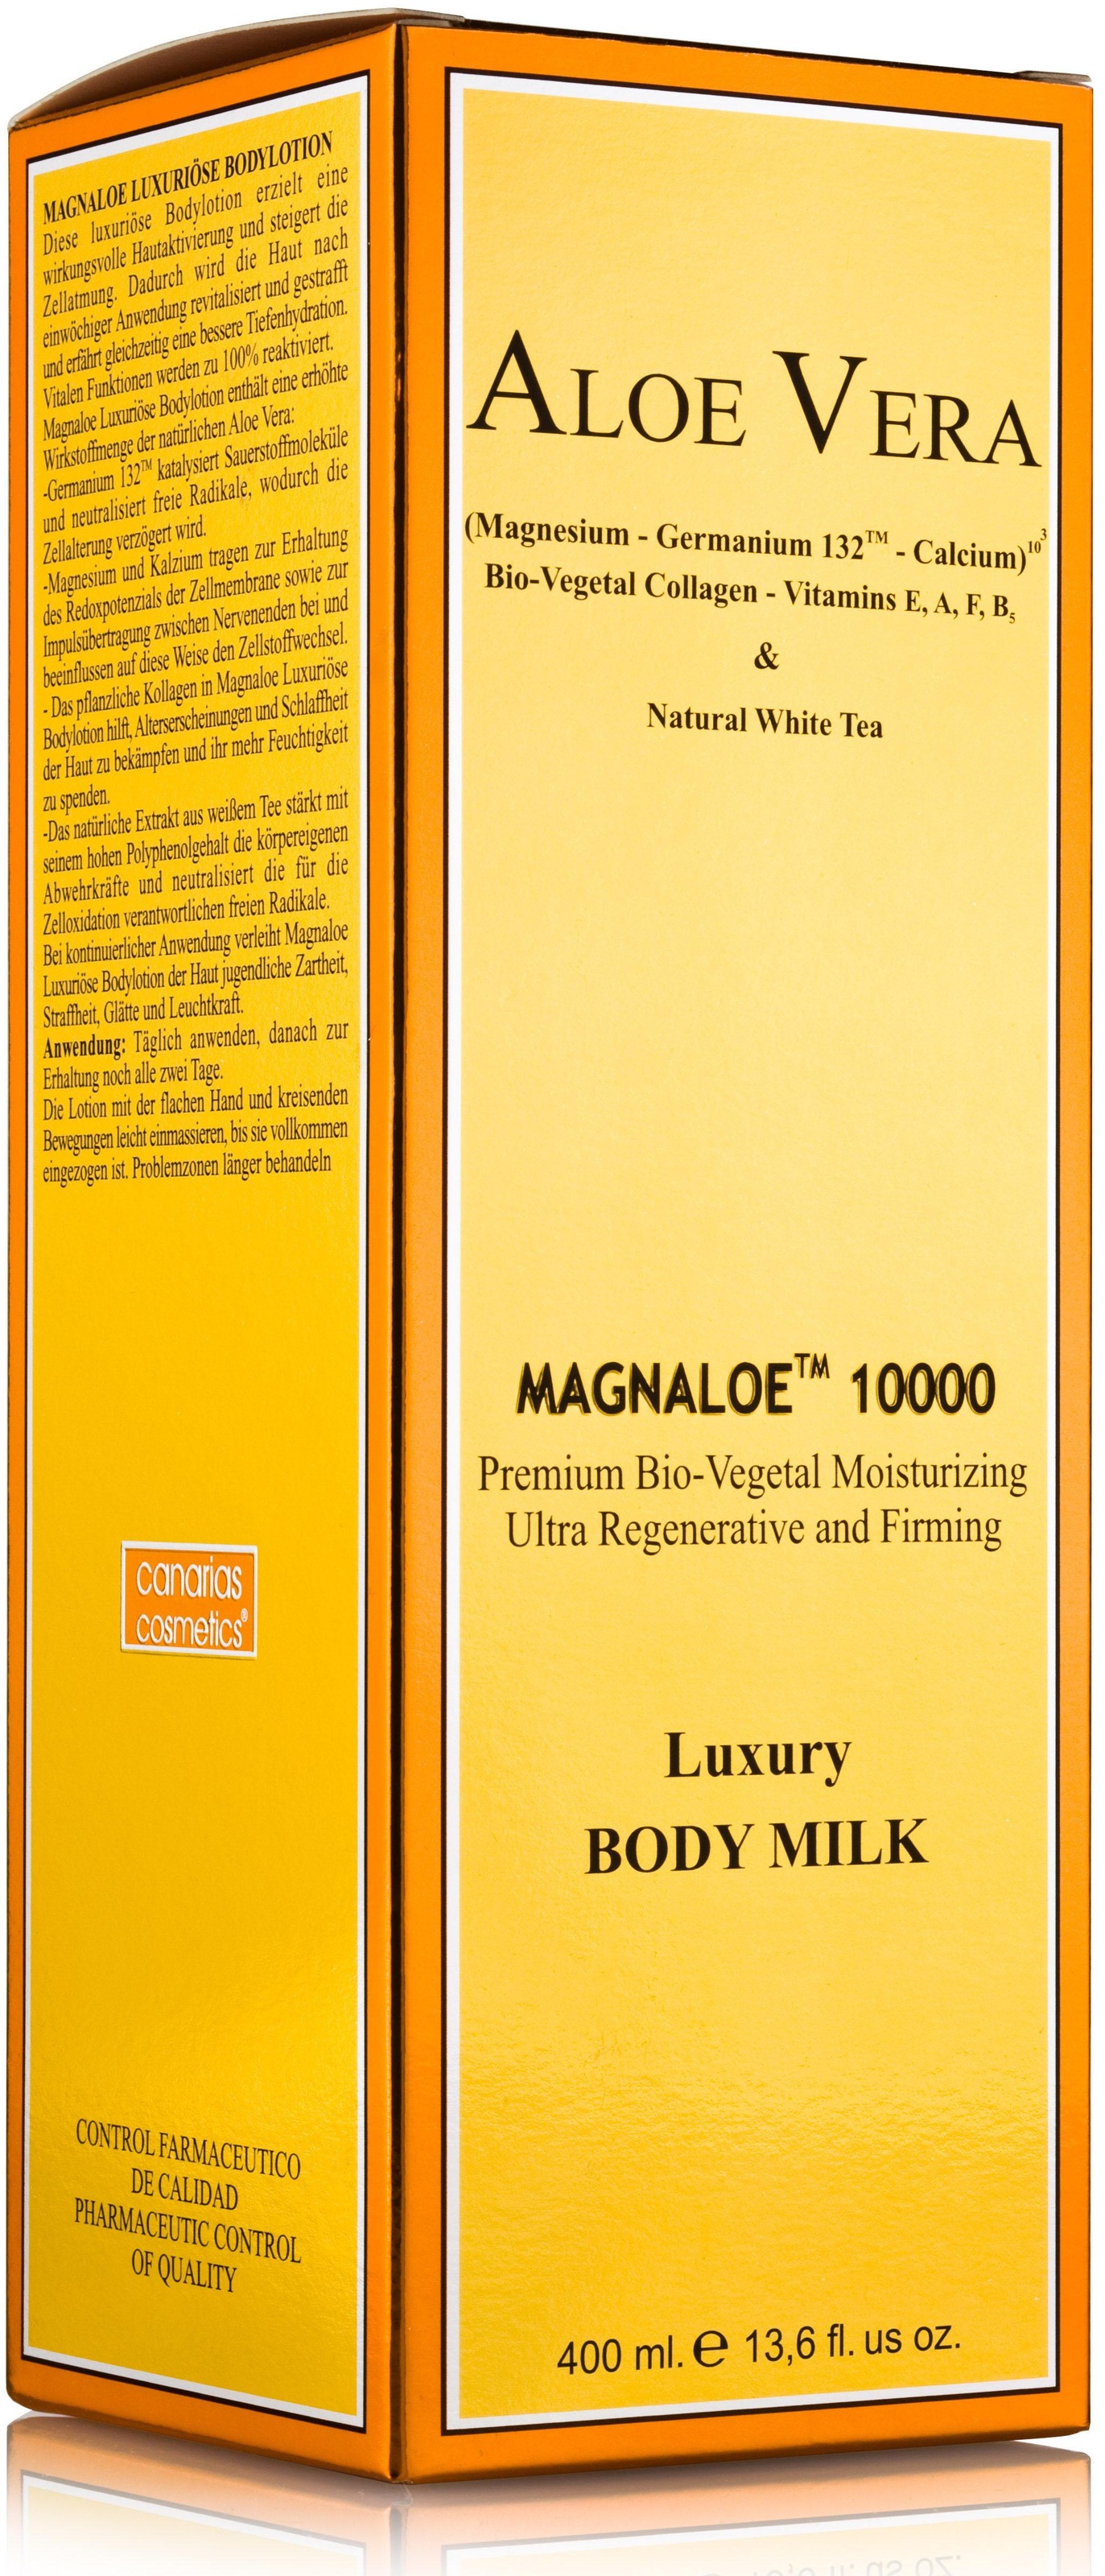 canarias cosmetics Körpermilch »Magnaloe 10000« jetzt bestellen